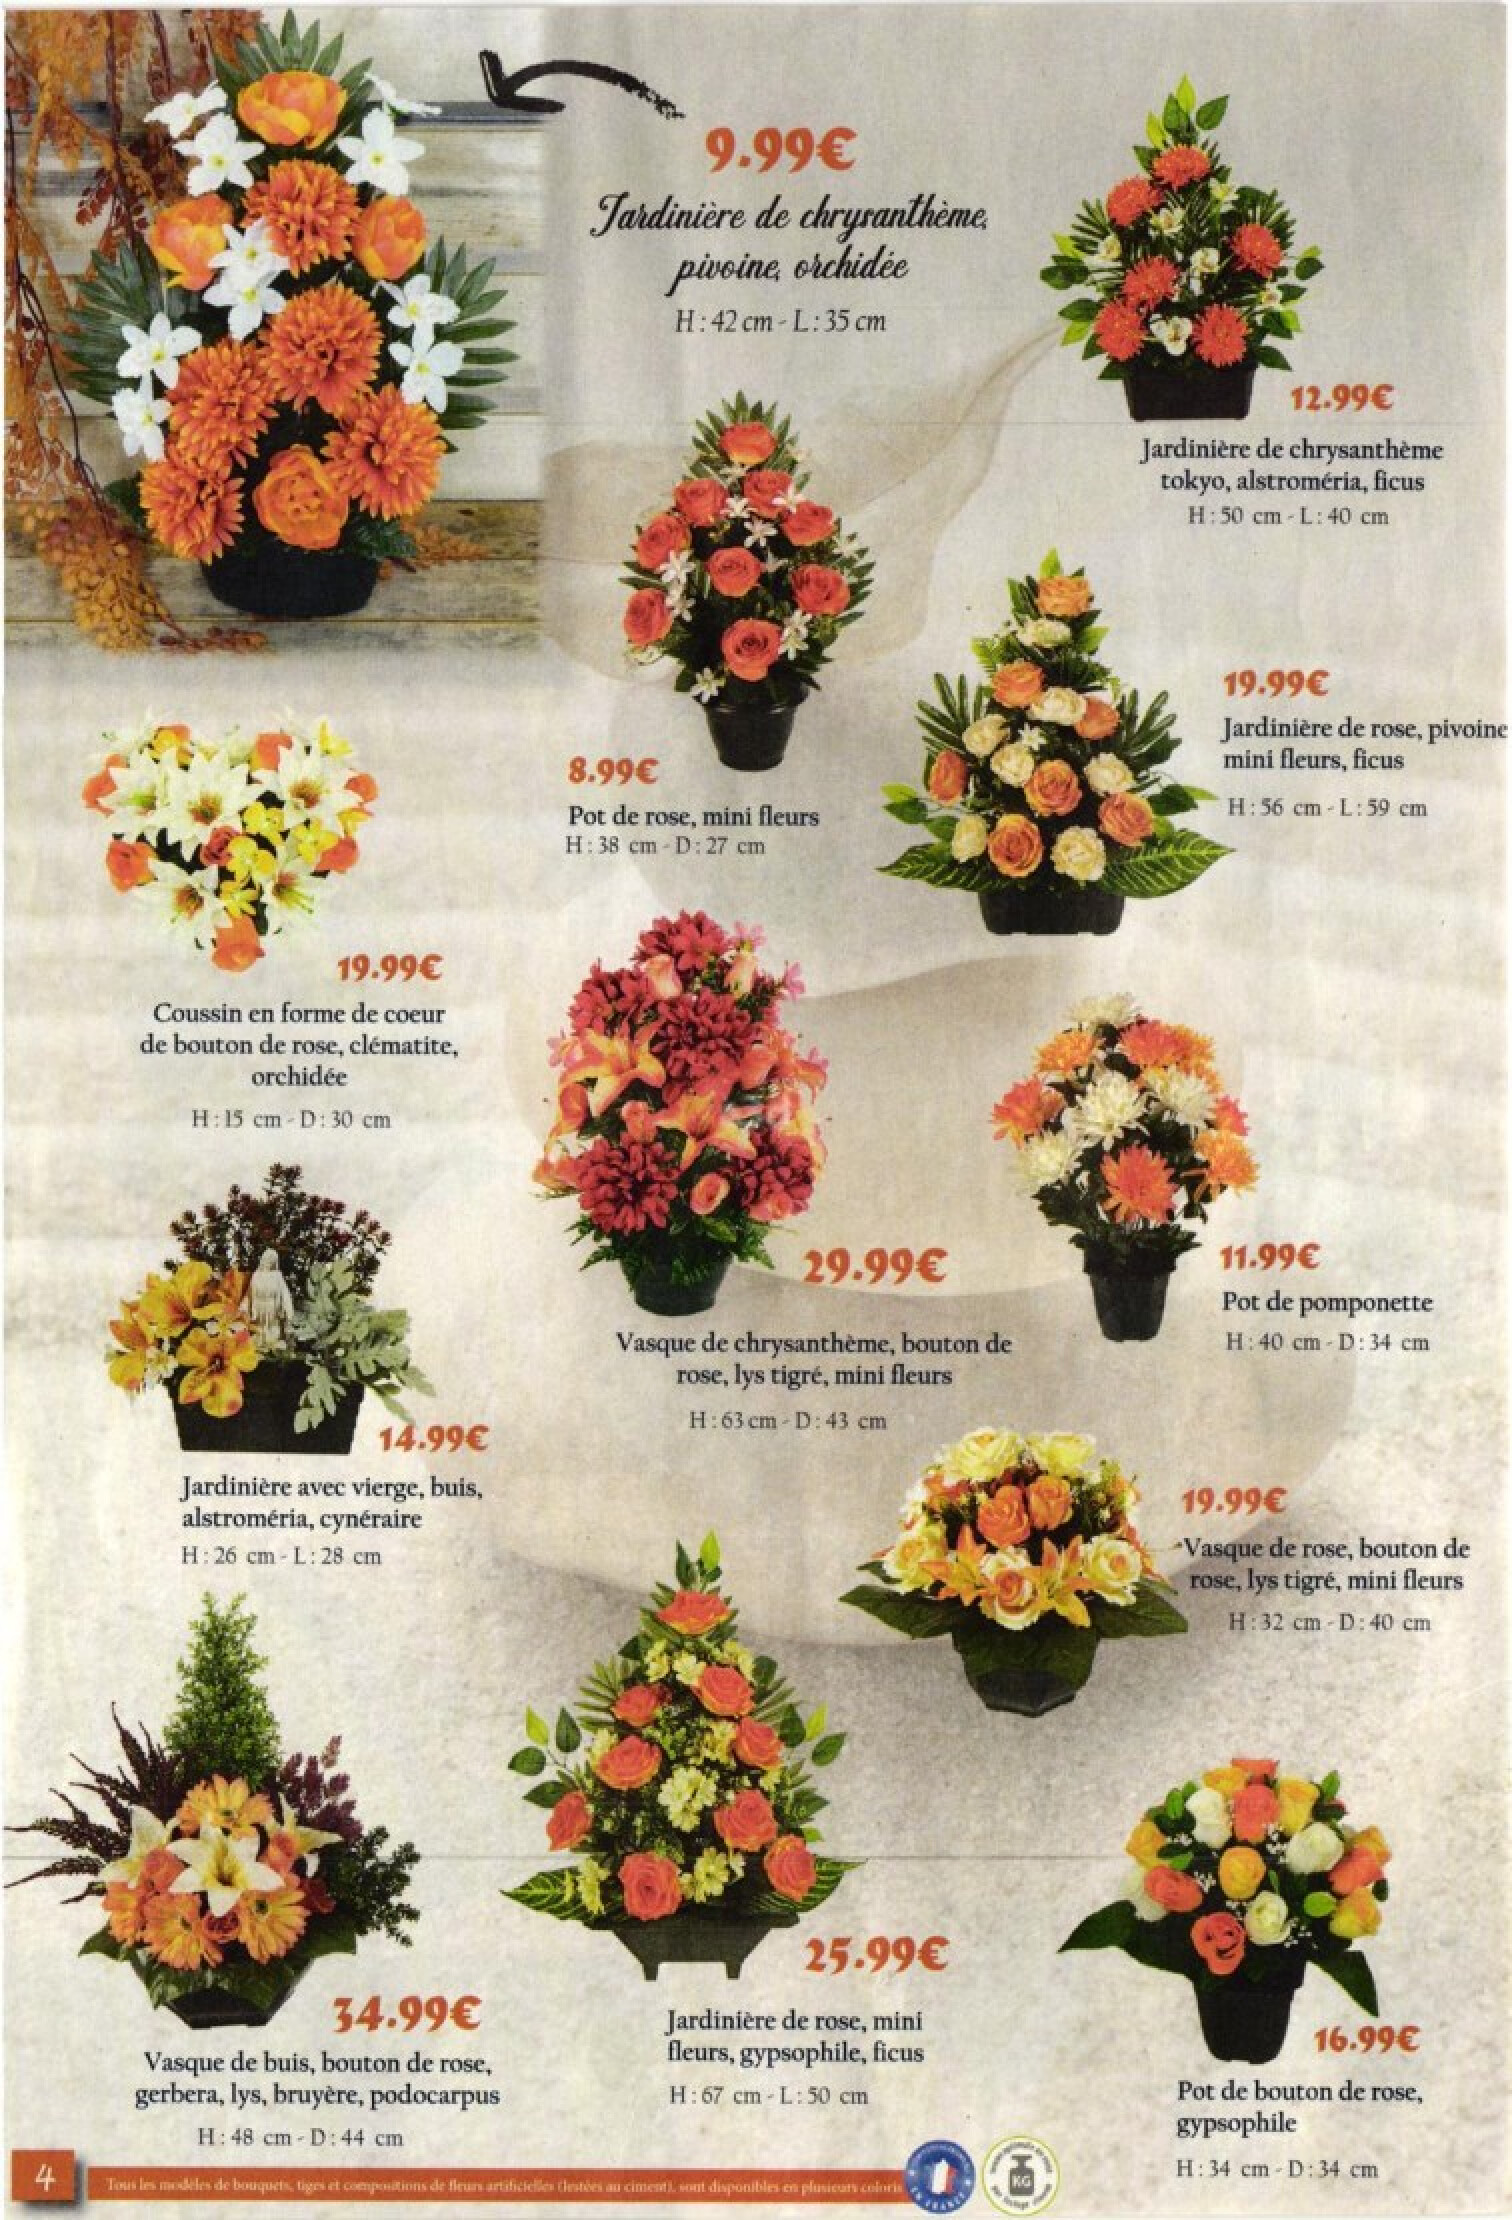 CENTRAKOR - Toussaint fleurs bouquets compositions & accessoires